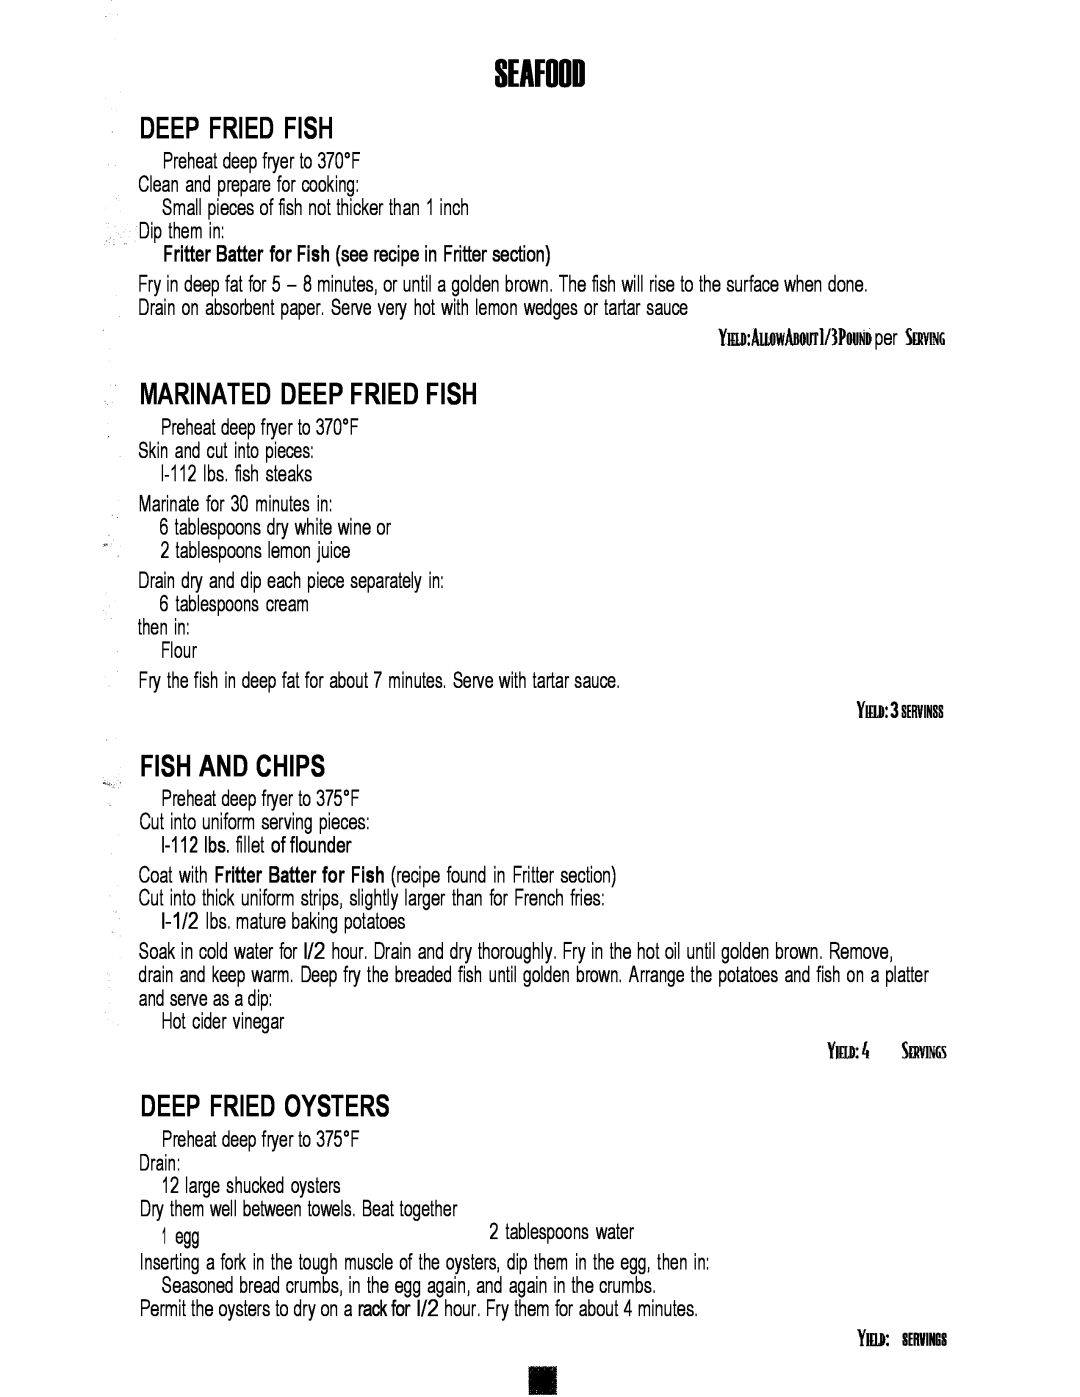 Sunbeam 3241, 3240 manual Deep Fried Fish, MARlNATED DEEP FRIED FISH, Fish And Chips, Deep Fried Oysters, Seafood 